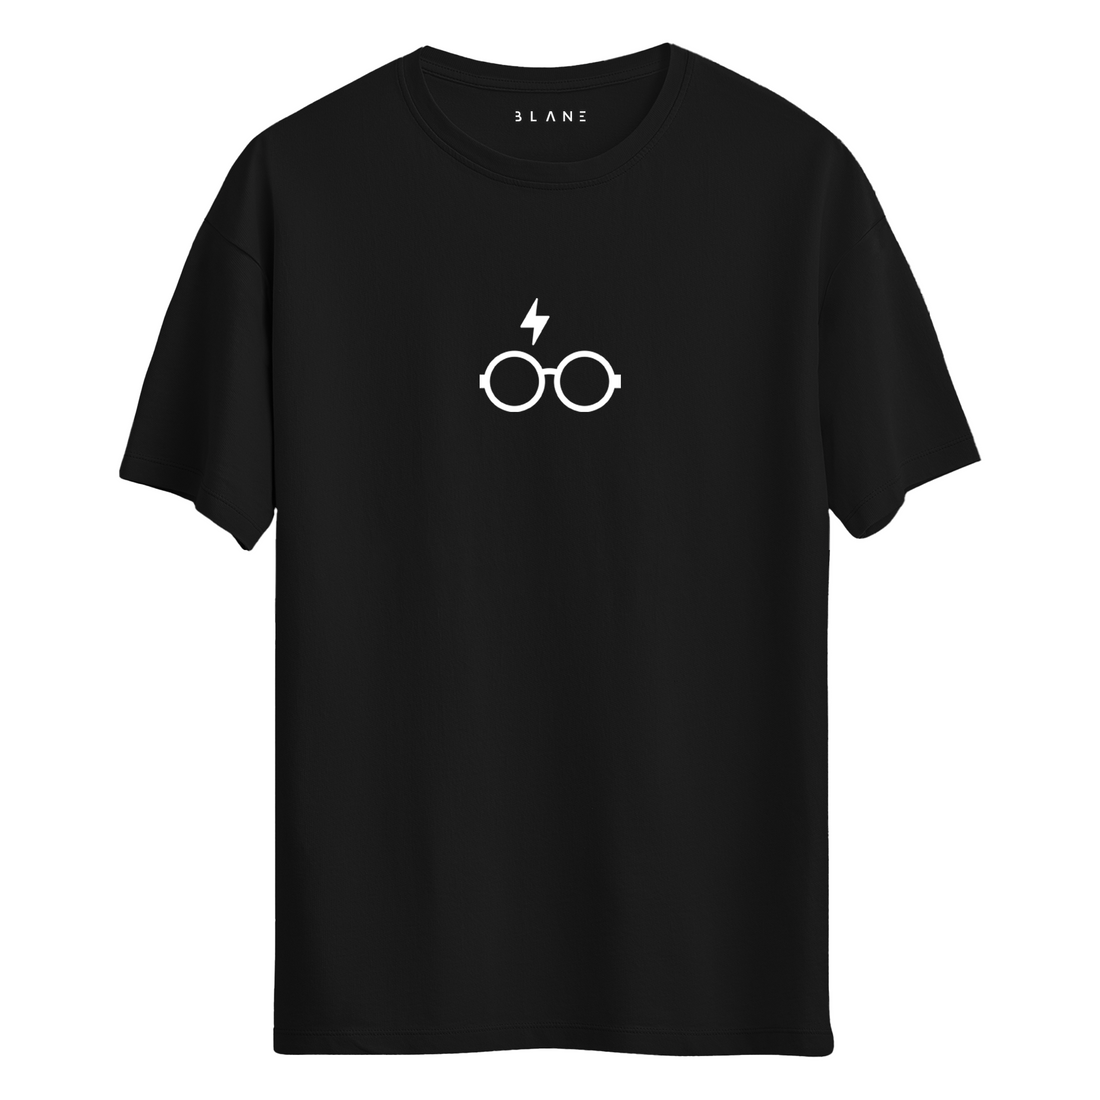 Harry - T-Shirt